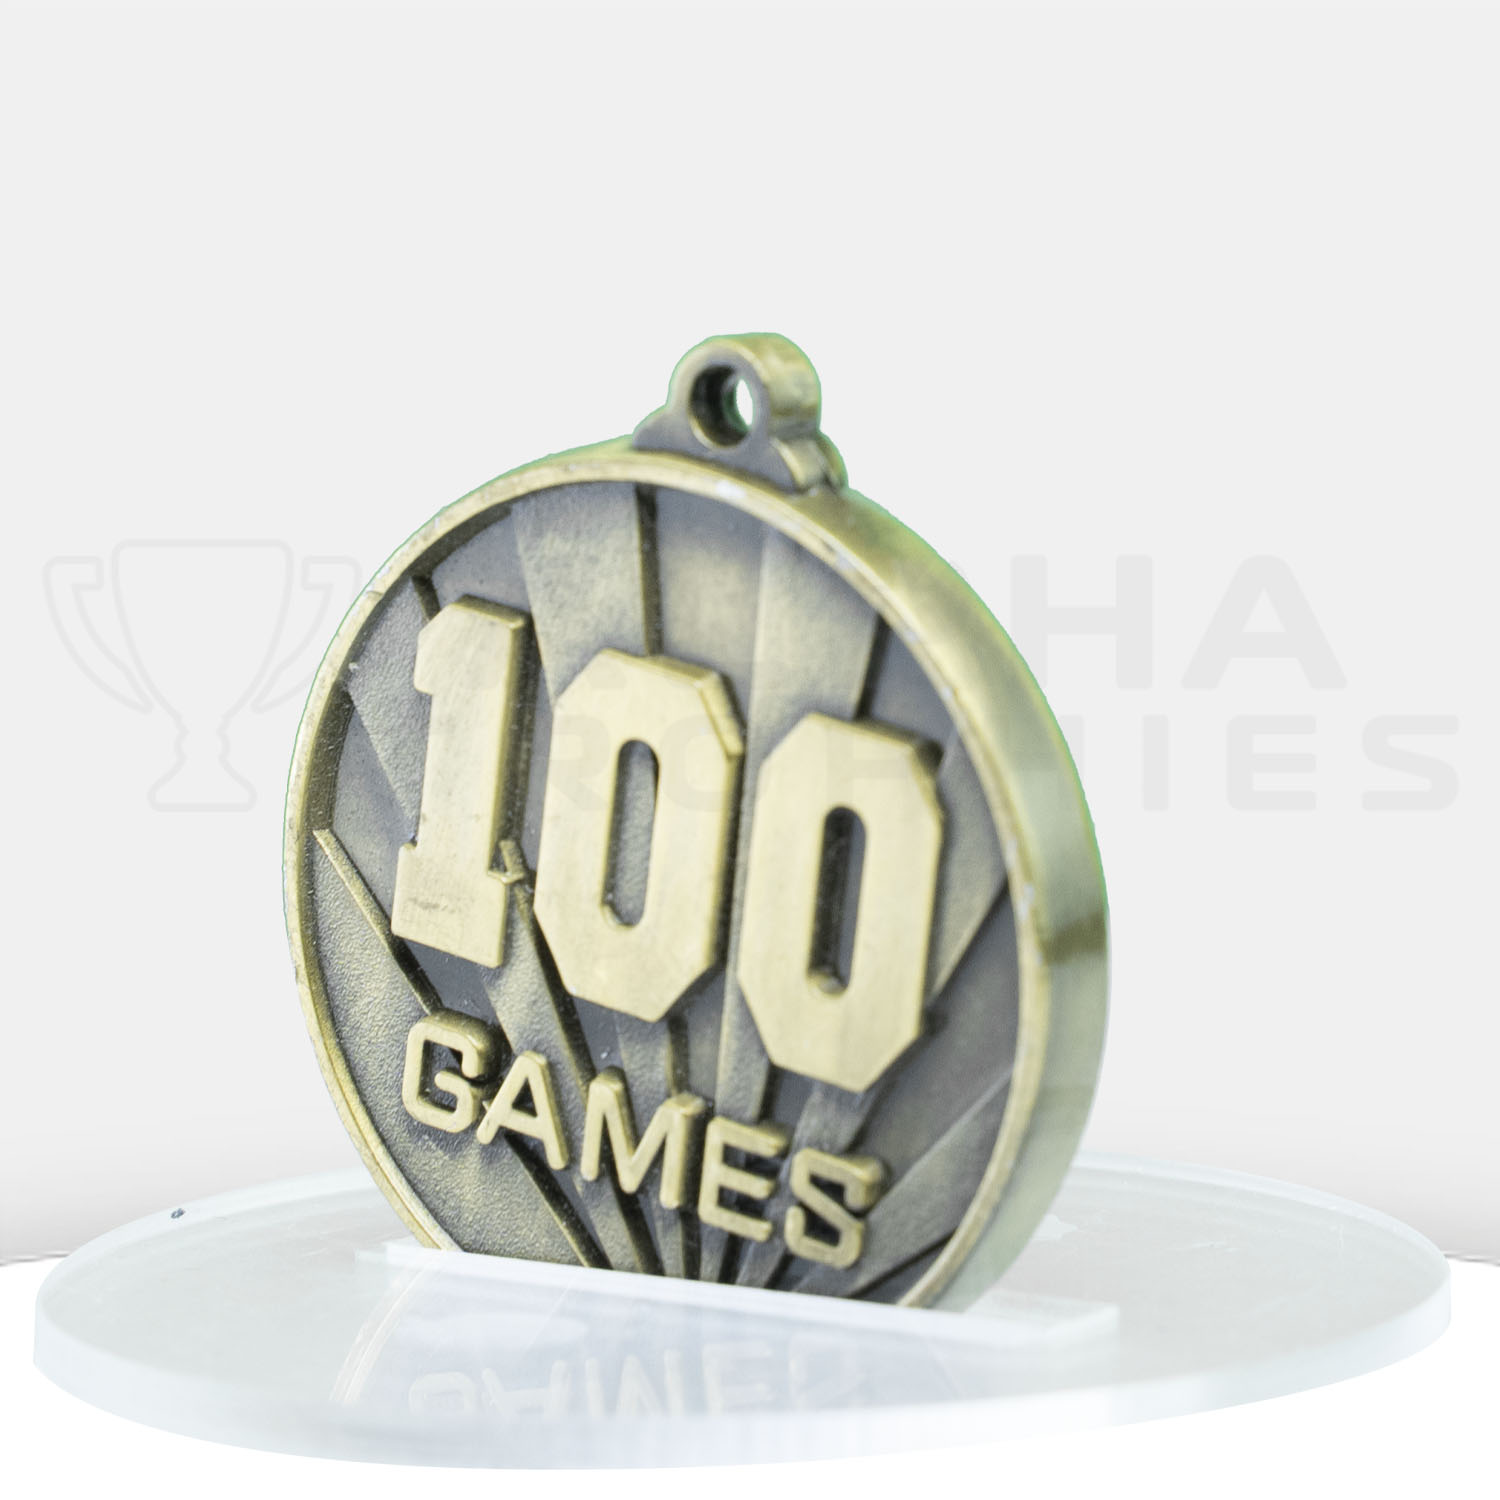 sunrise-medal-no-games-100-1076g-100g-side